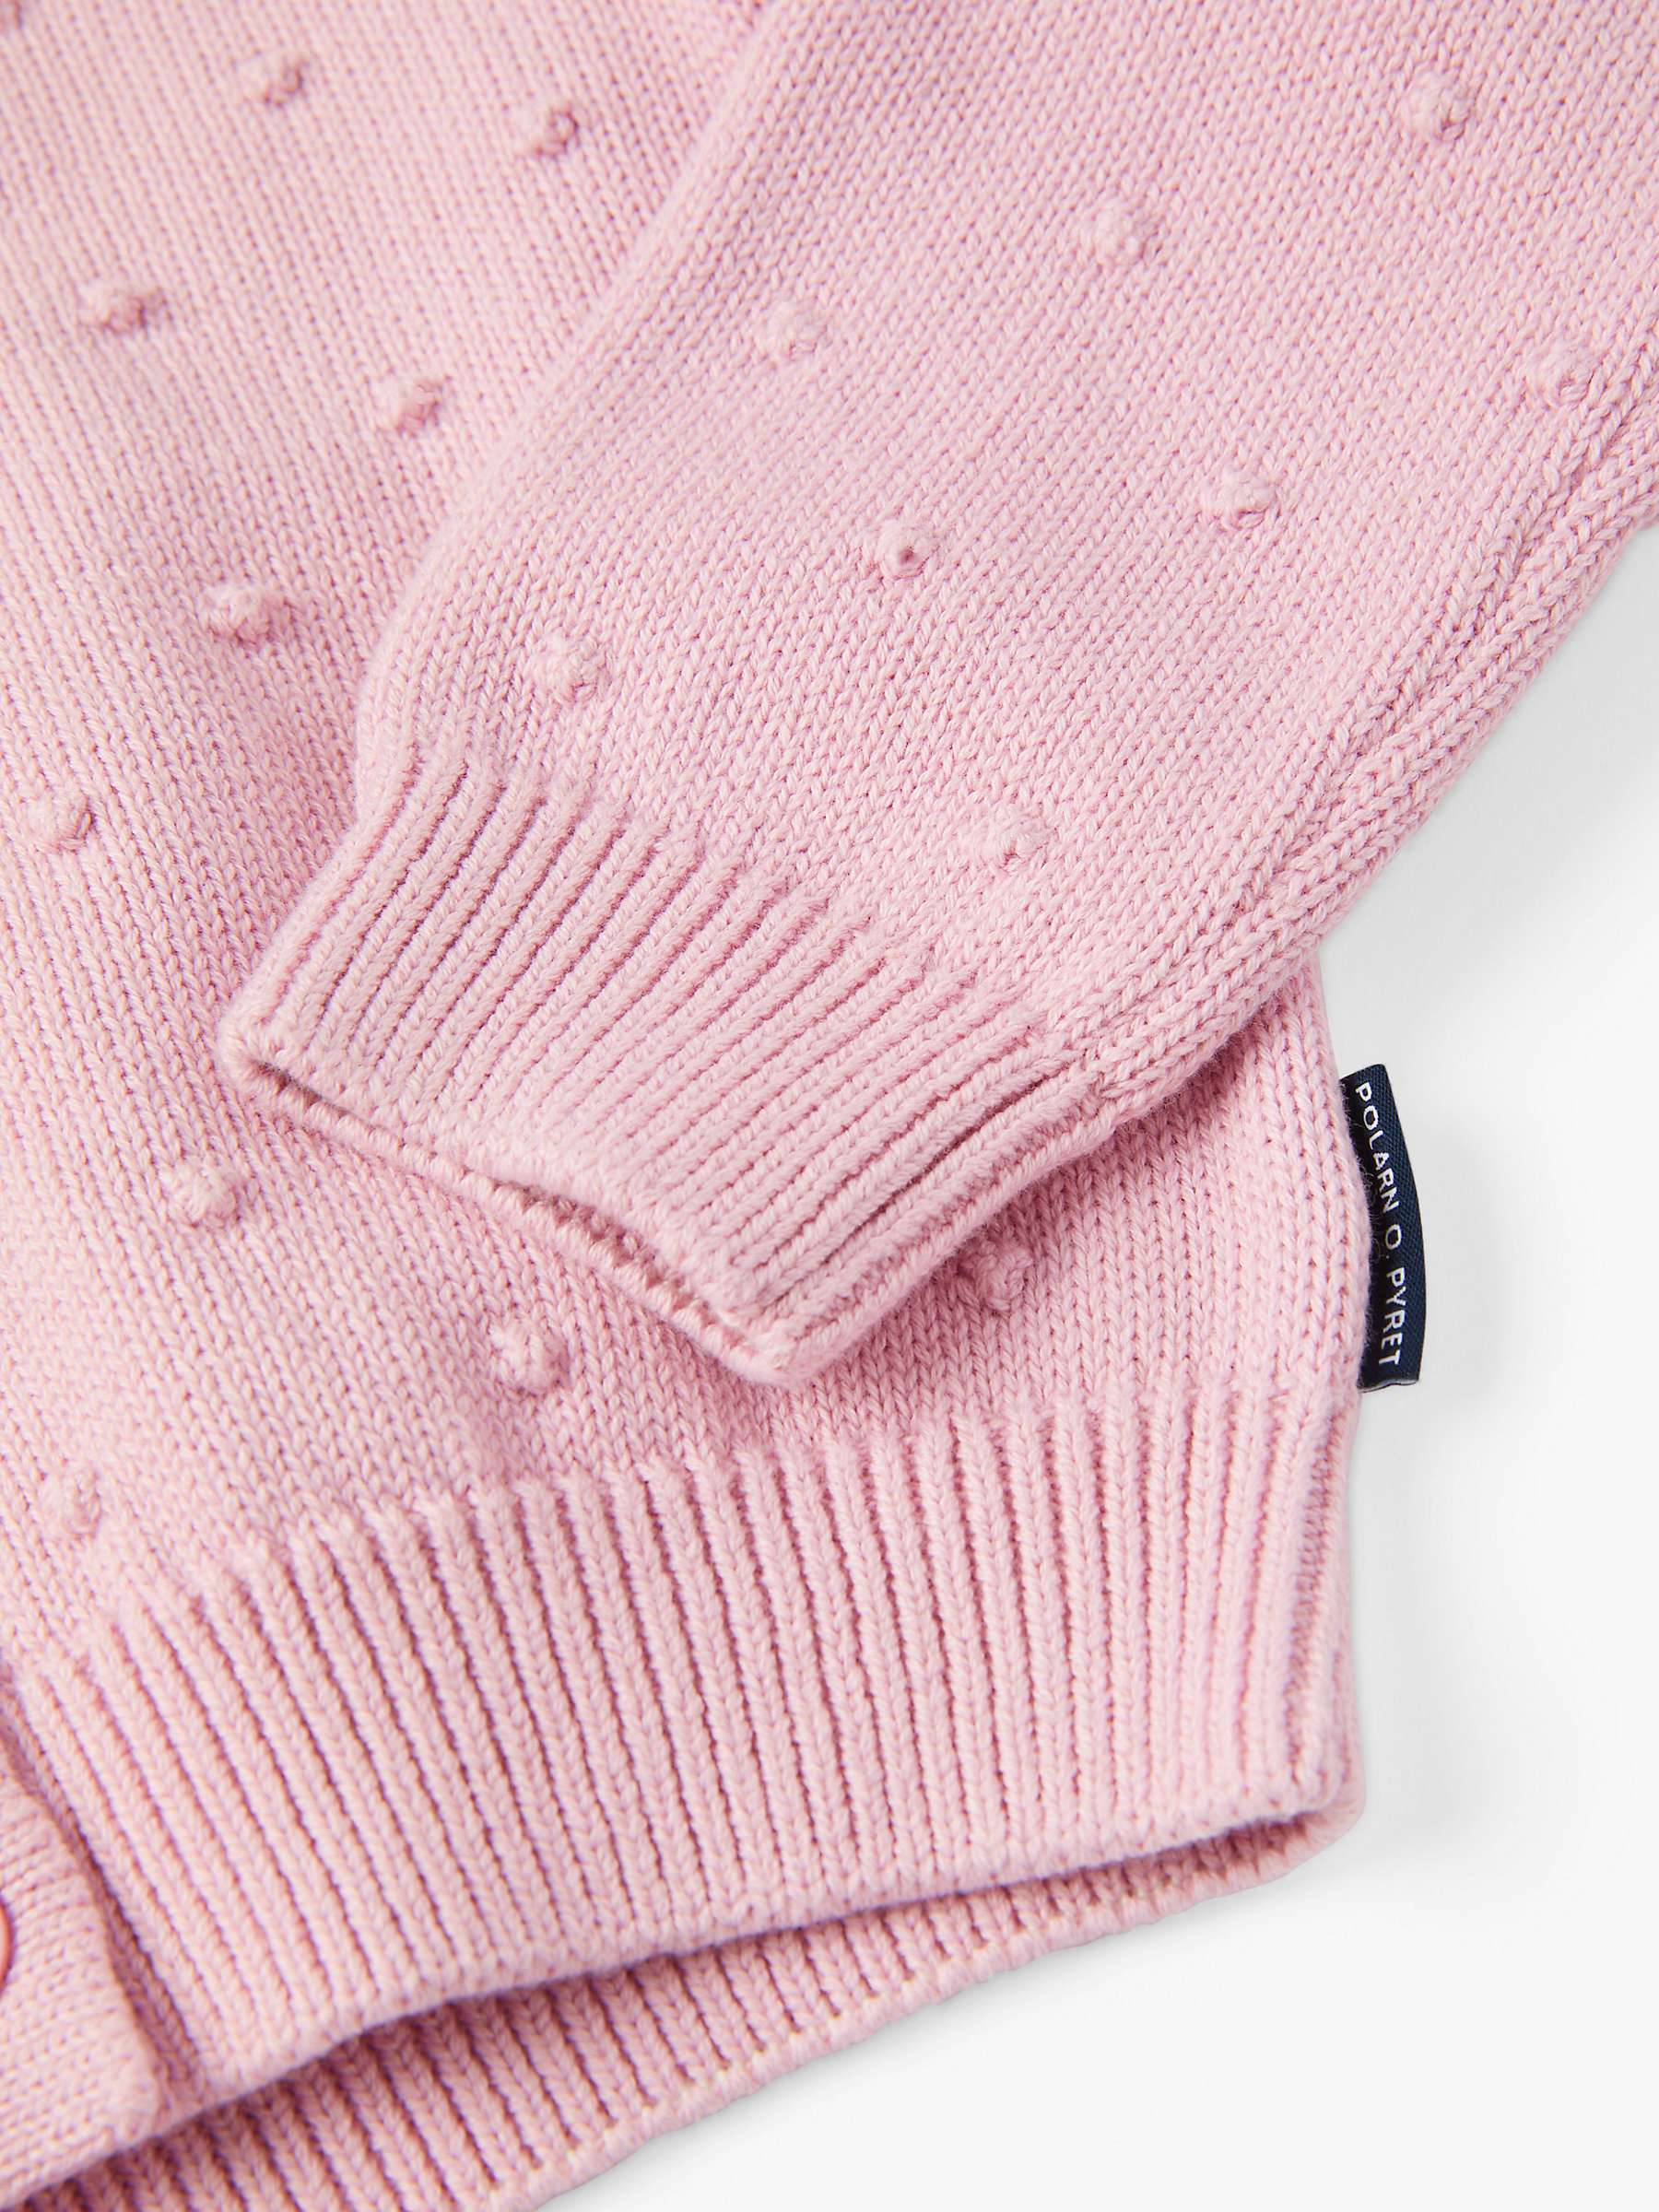 Buy Polarn O. Pyret Kids' Organic Cotton Knit Bobble Detail Cardigan, Pink Online at johnlewis.com